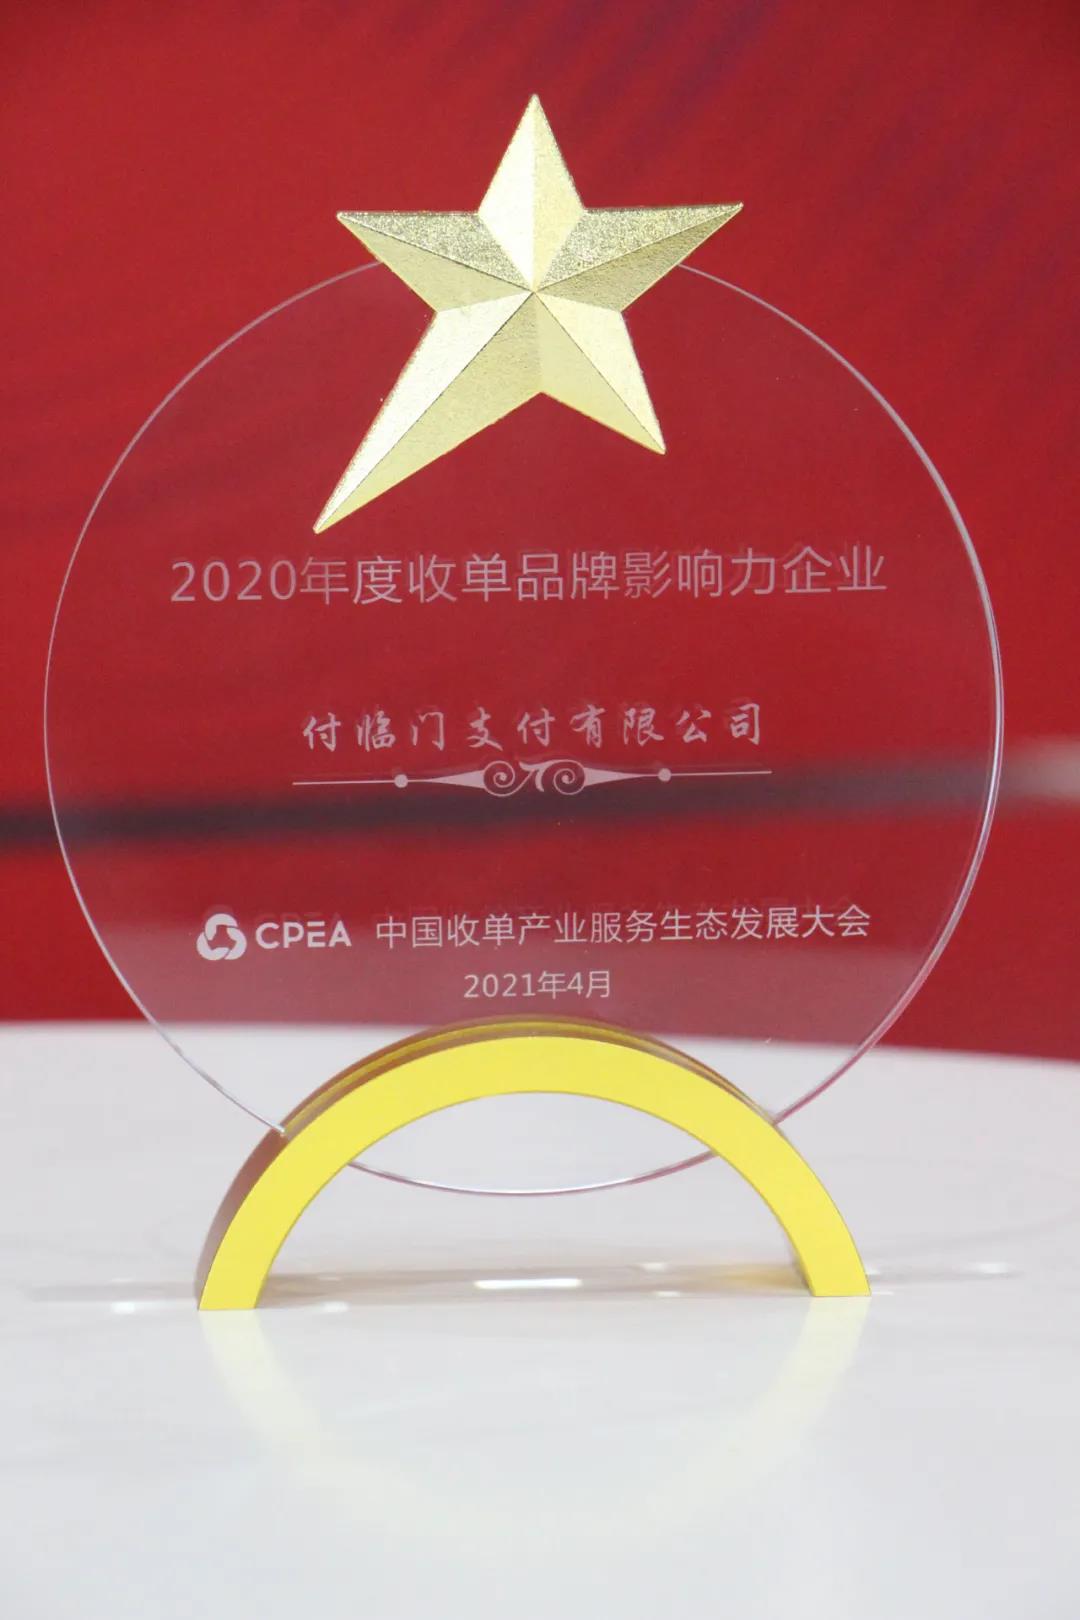 付临门荣获“2020年度收单品牌影响力企业”称号